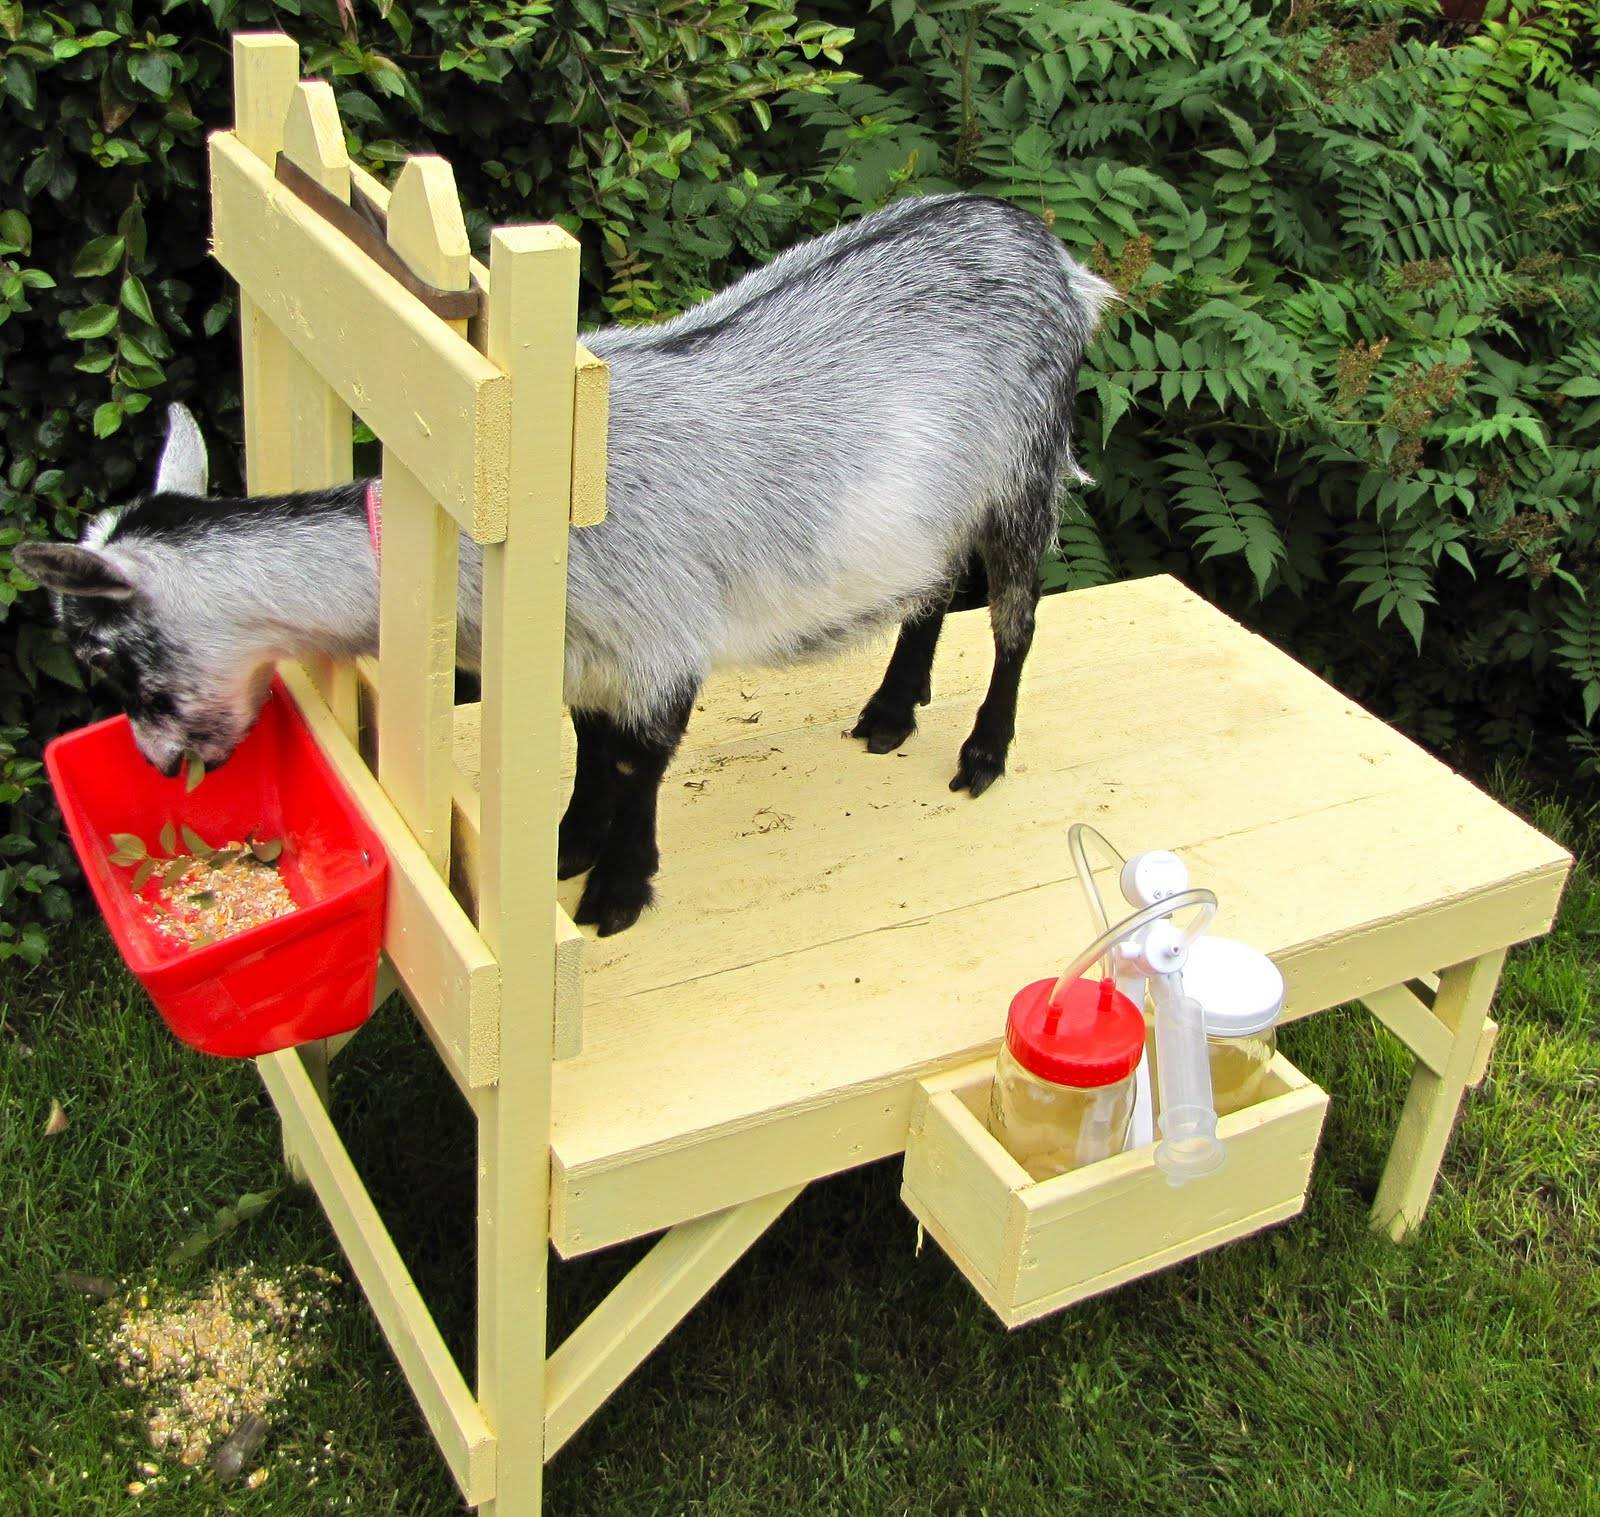 Кормушка для козы своими руками: фото и чертежи